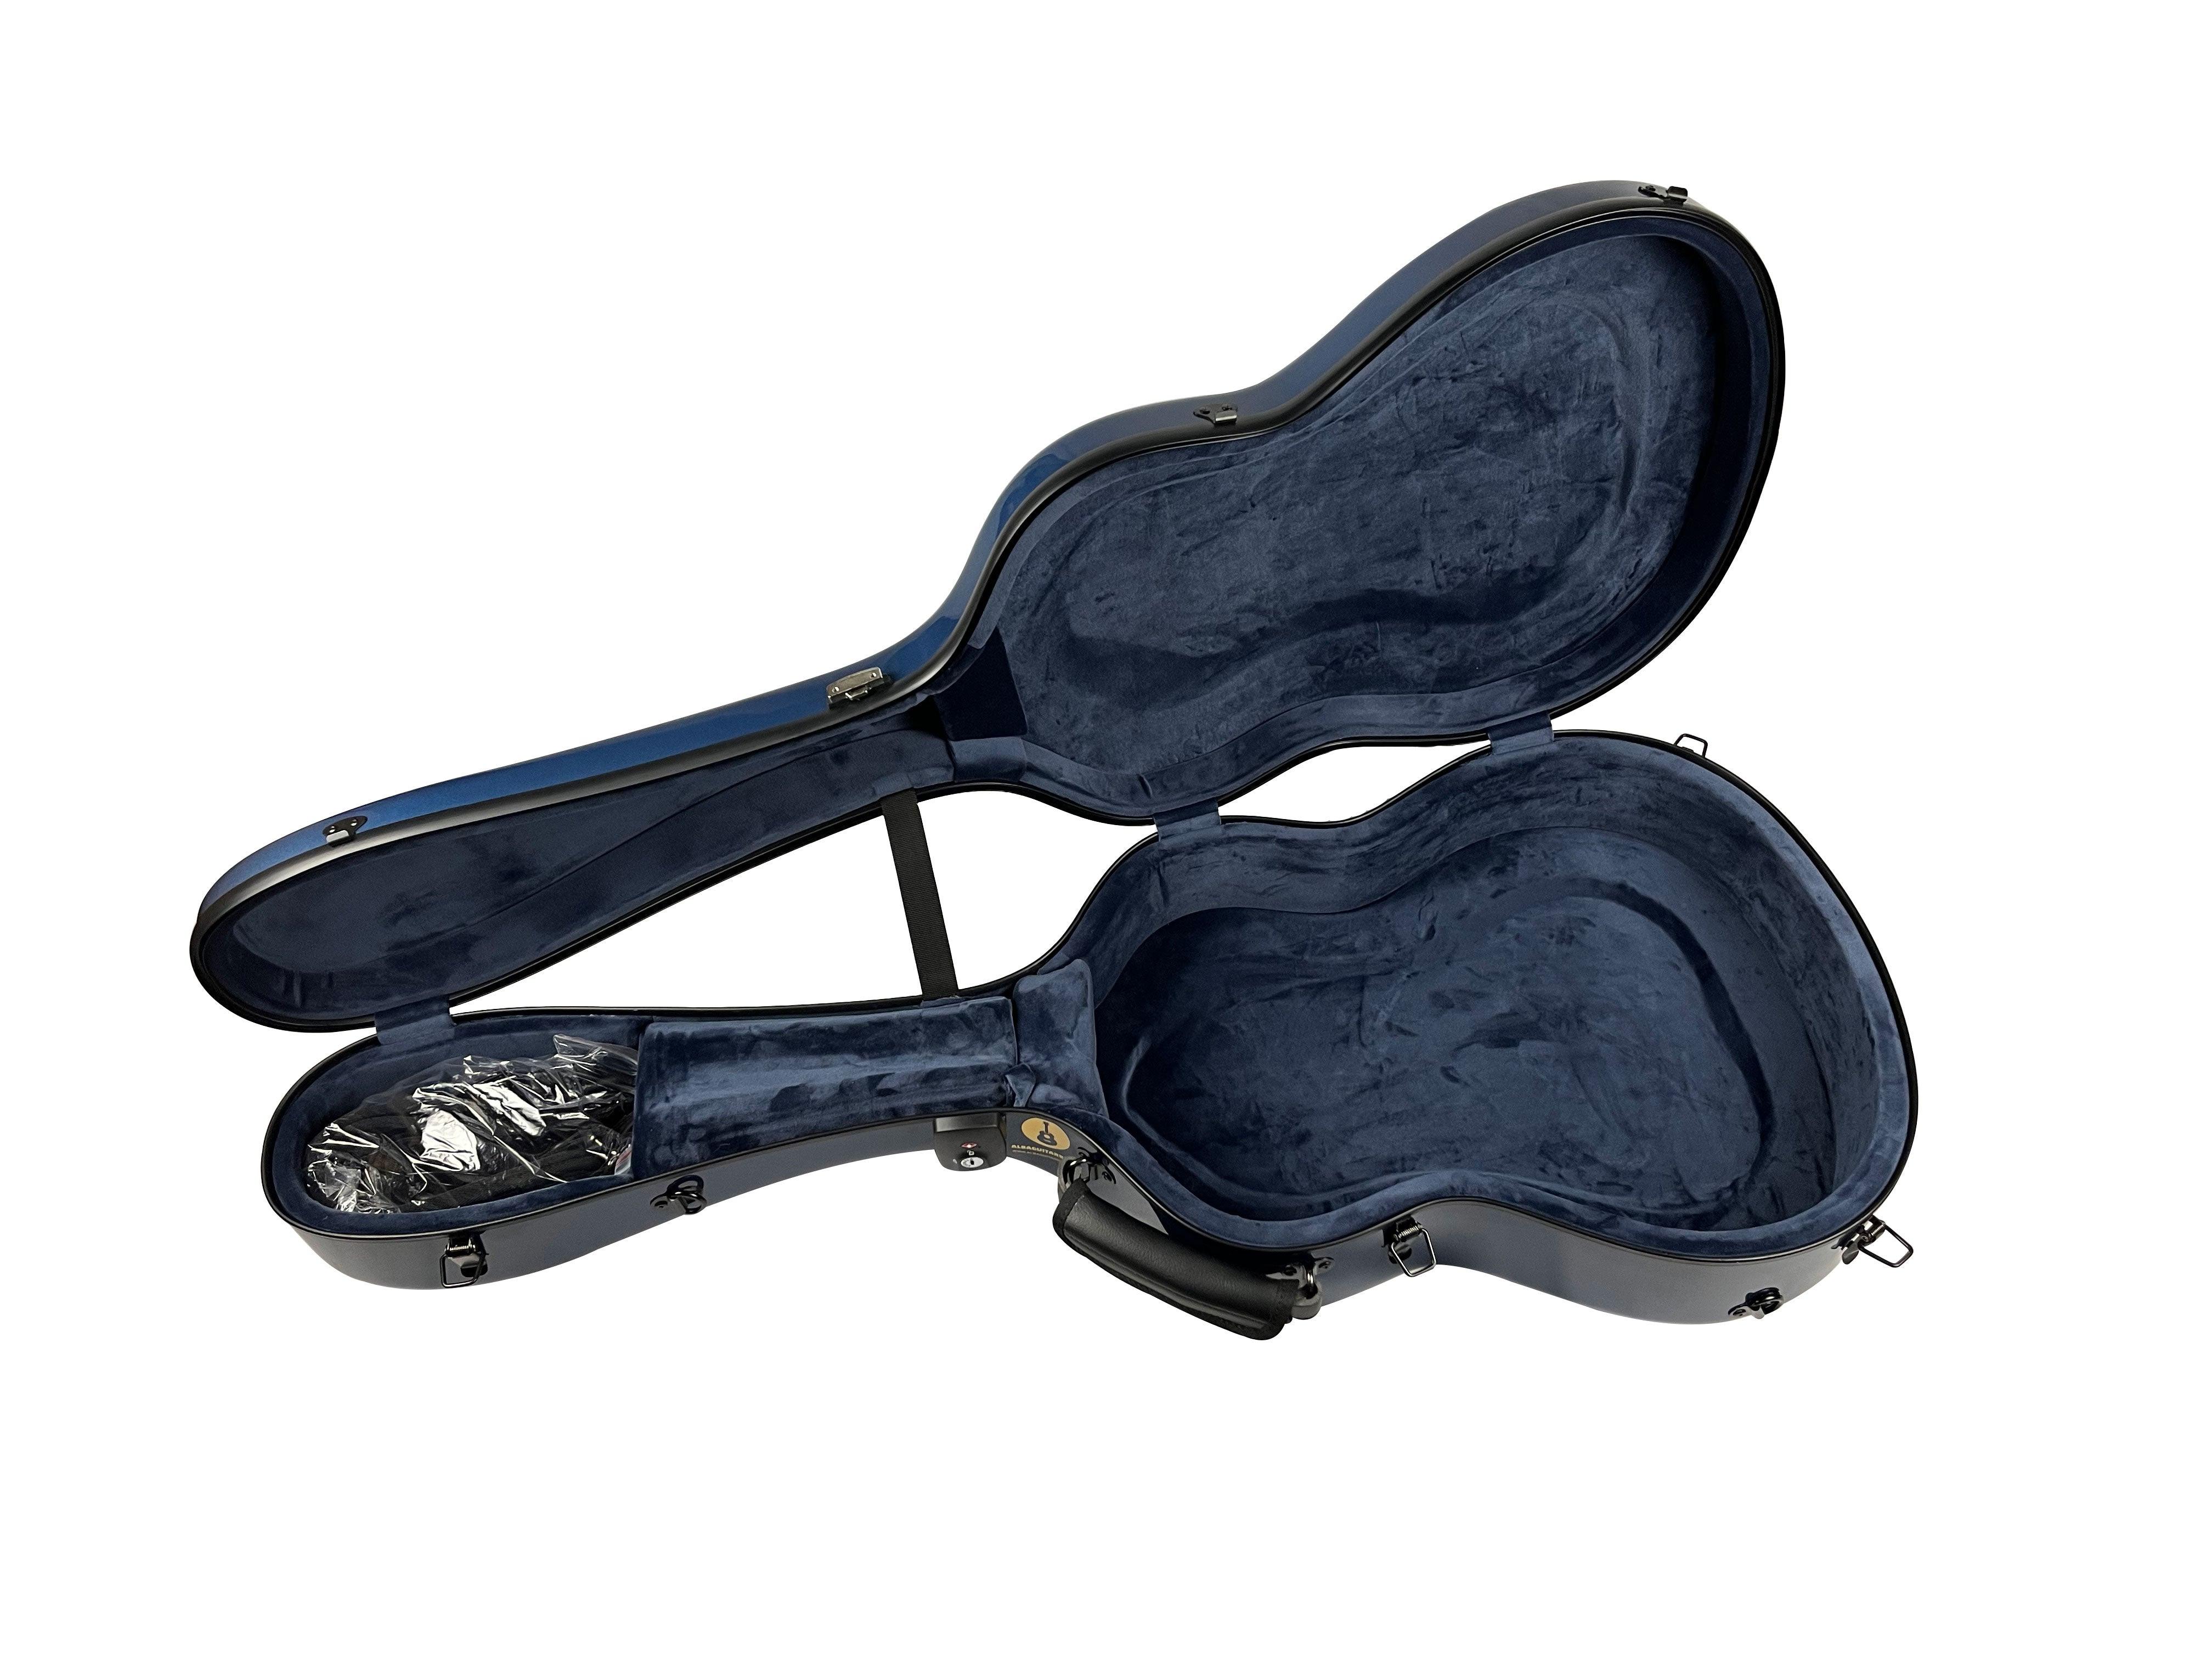 Carbon Alba Guitar Case Blue Gloss for Classical Guitar Acoustic, Flamenco guitar - mackazie